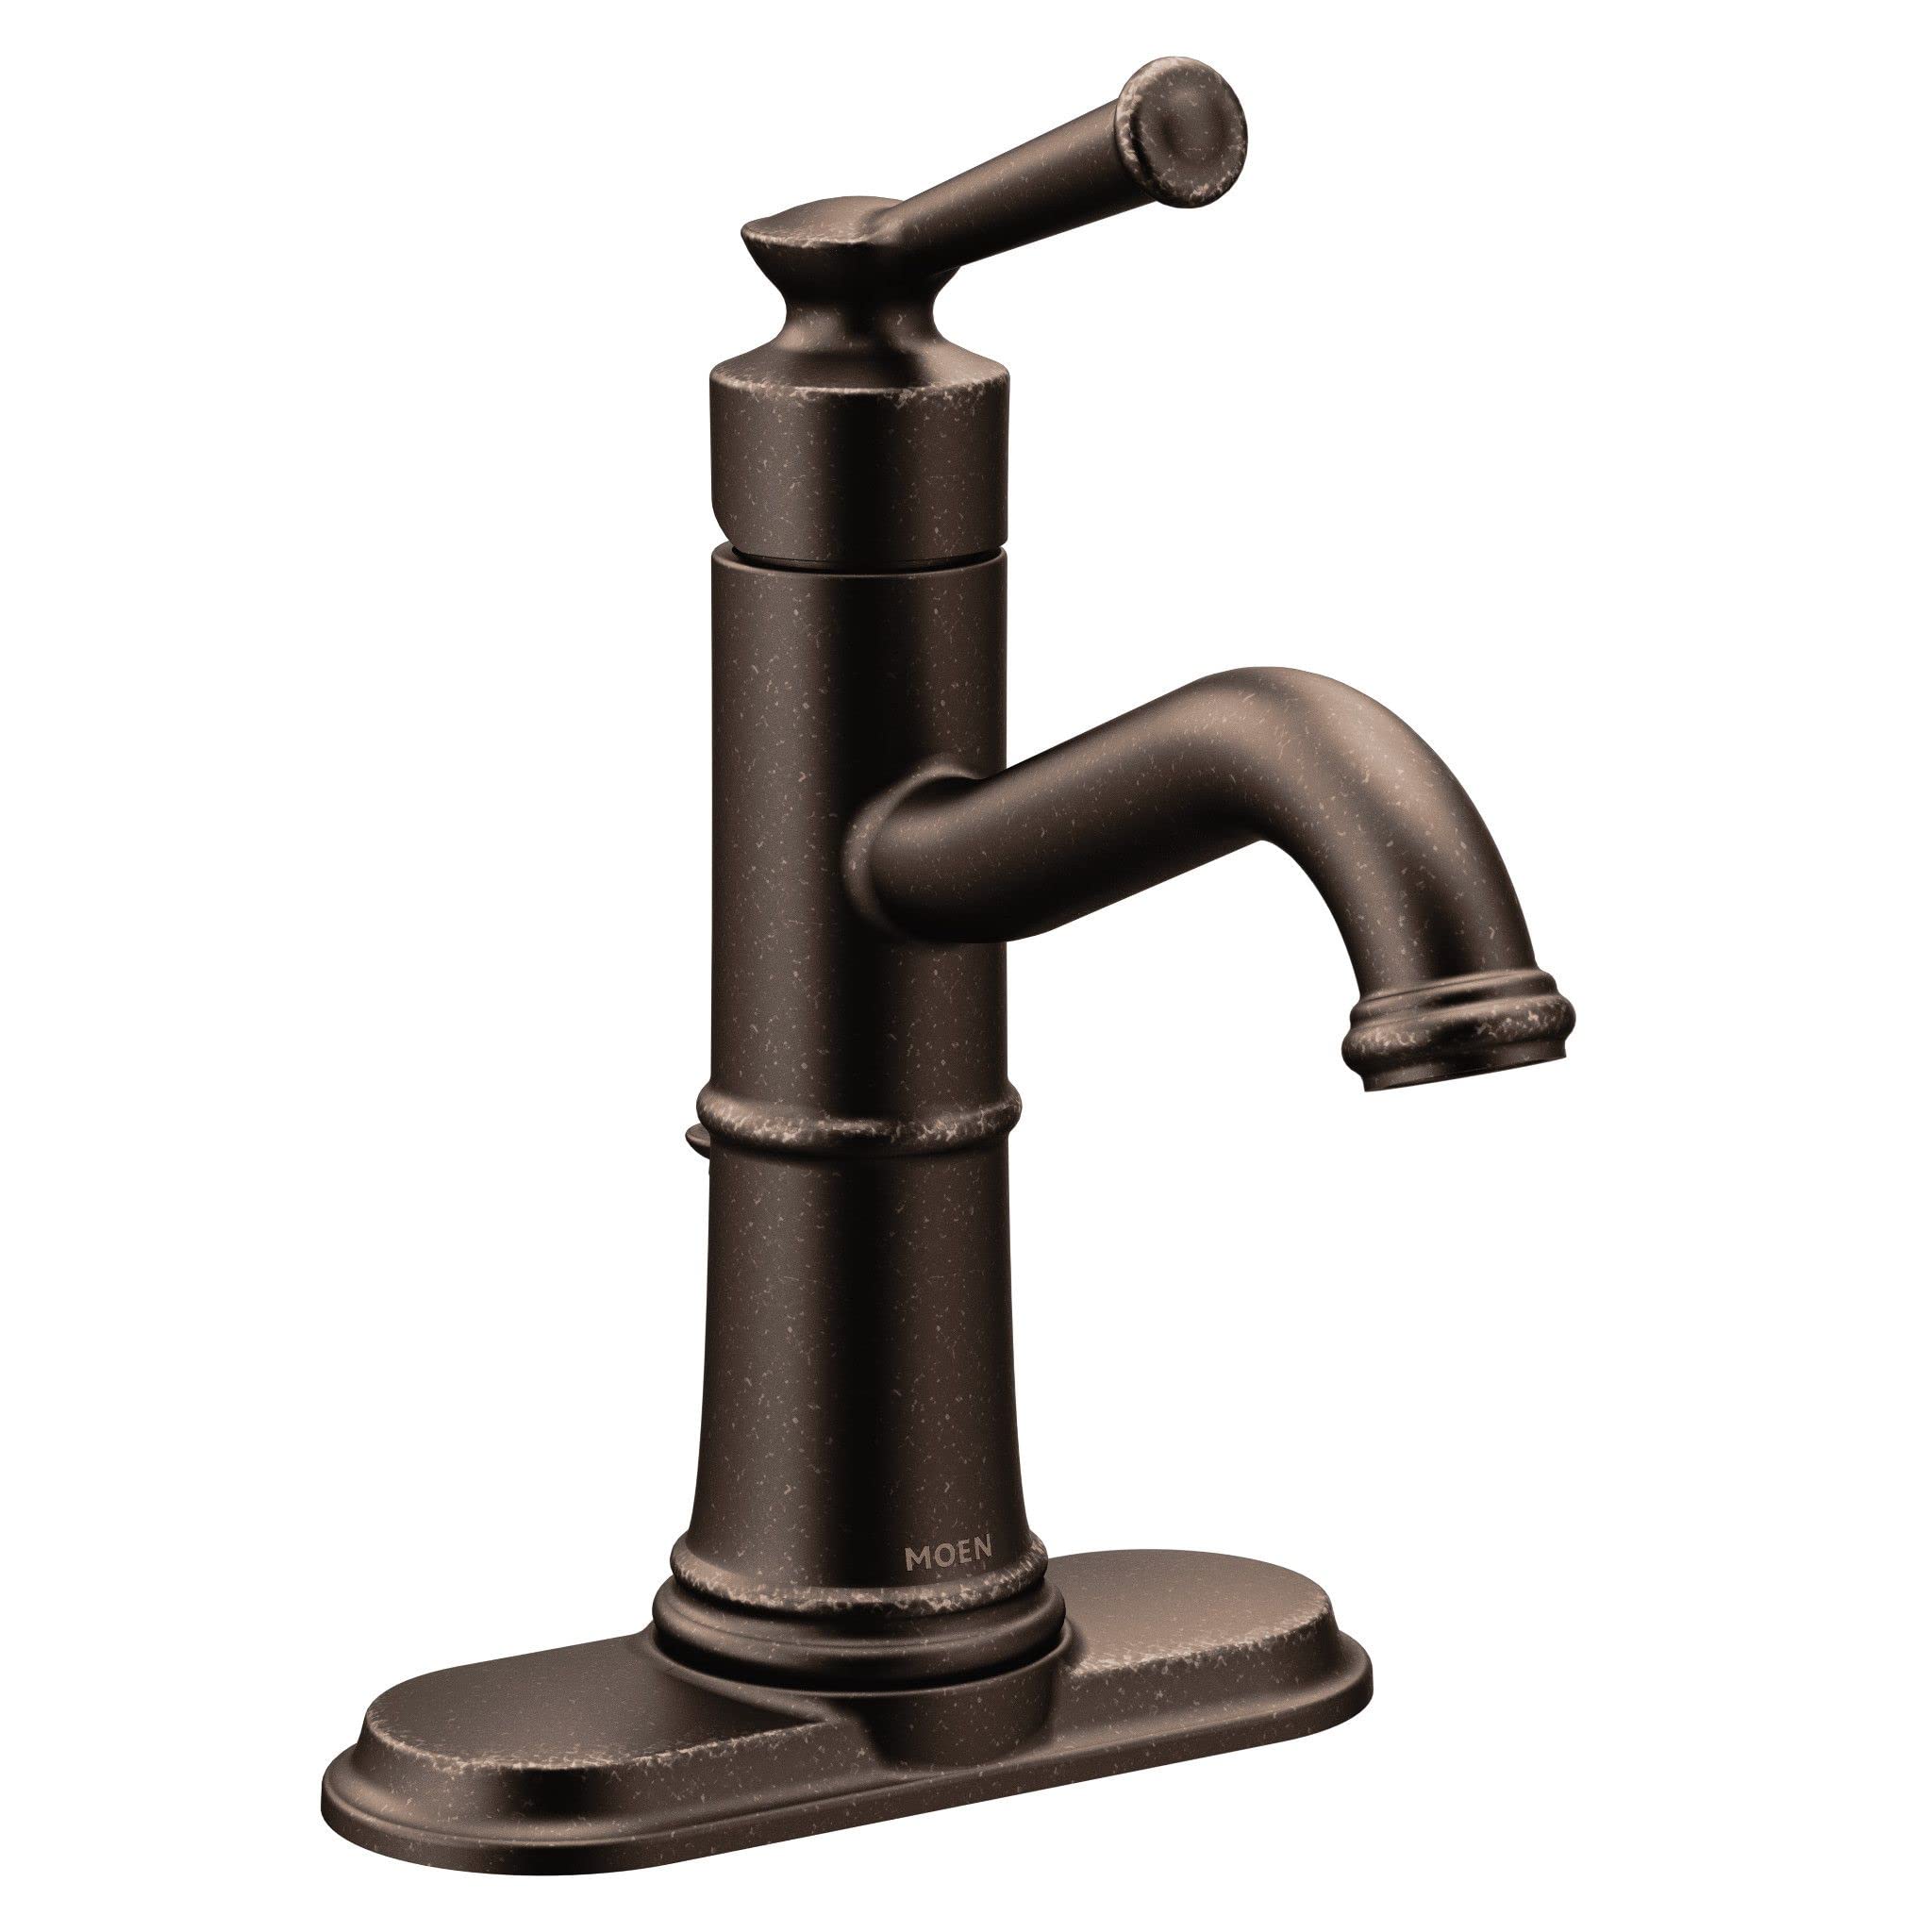 Moen Belfield Oil Rubbed Bronze One-Handle Bathroom Faucet, 6402ORB